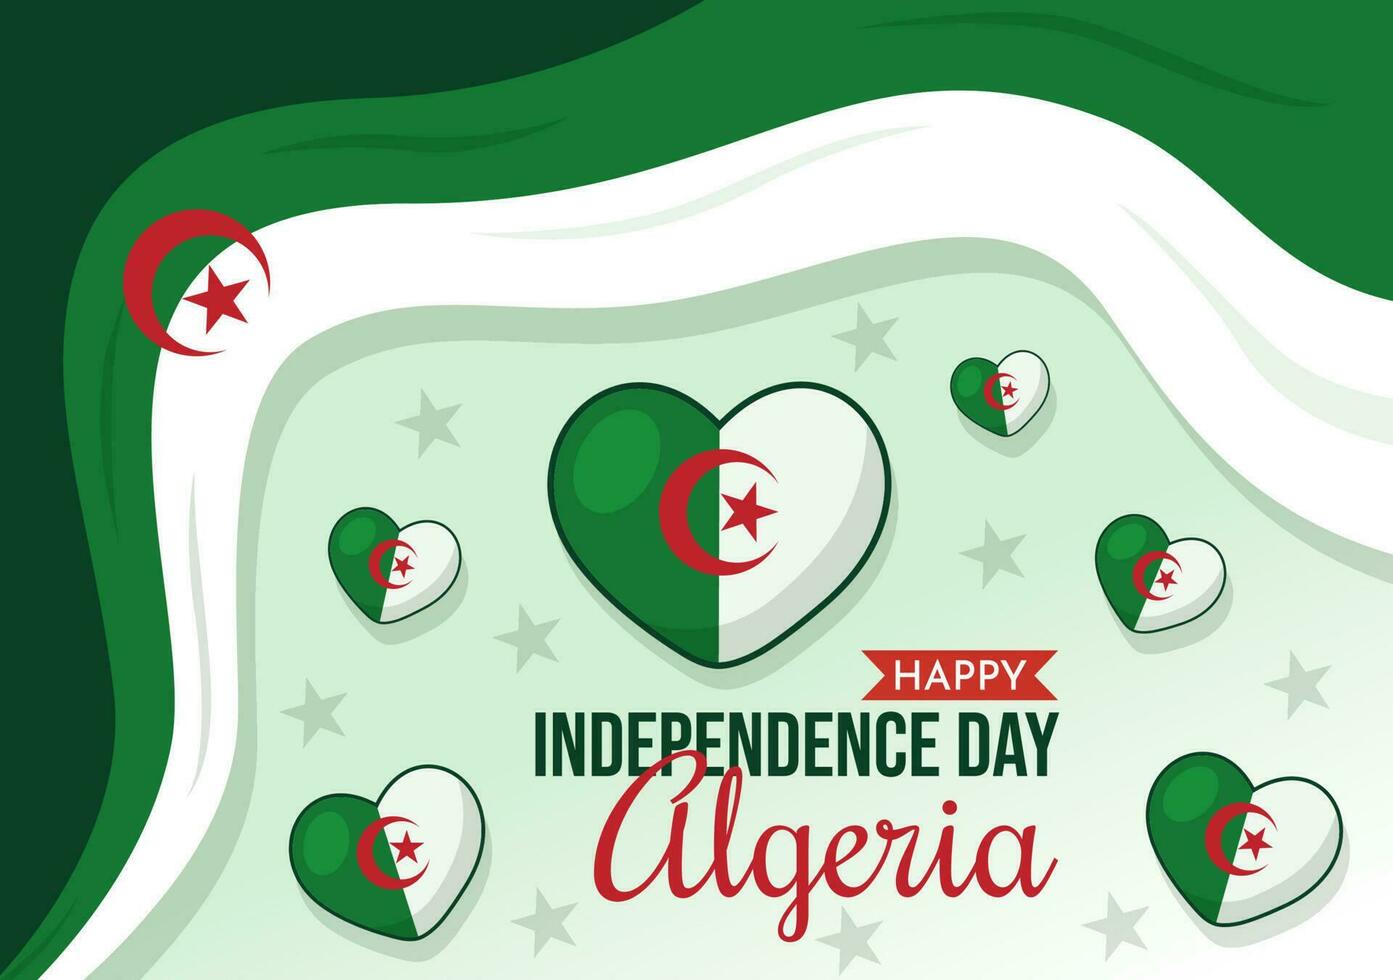 glücklich Algerien Unabhängigkeit Tag Vektor Illustration mit winken Flagge im eben Karikatur Hand gezeichnet Landung Seite Grün Hintergrund Vorlagen